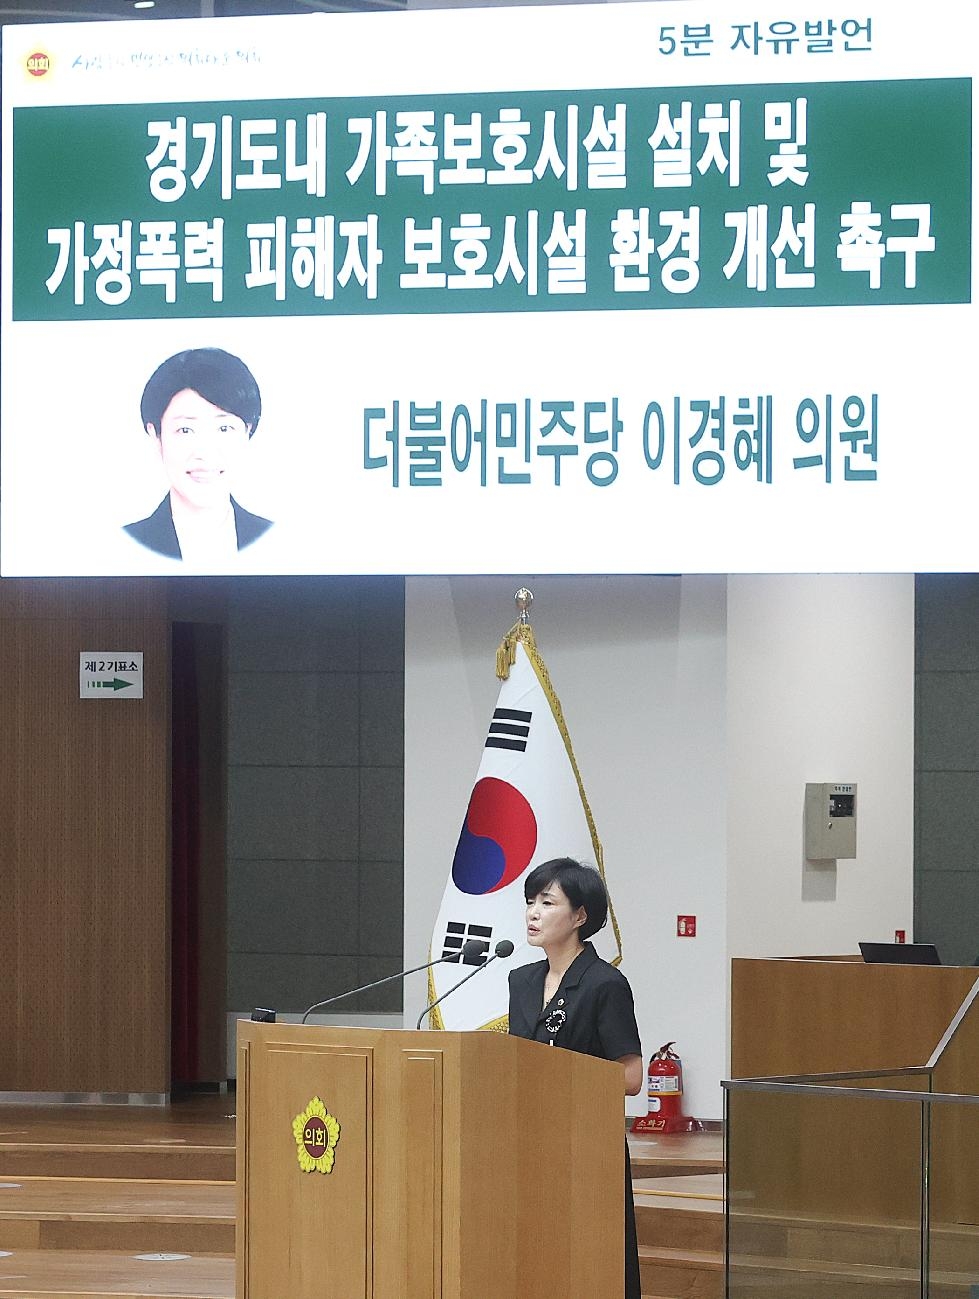 경기도의회 이경혜의원, 경기도내 가정폭력 피해자 보호시설 환경 개선 촉구